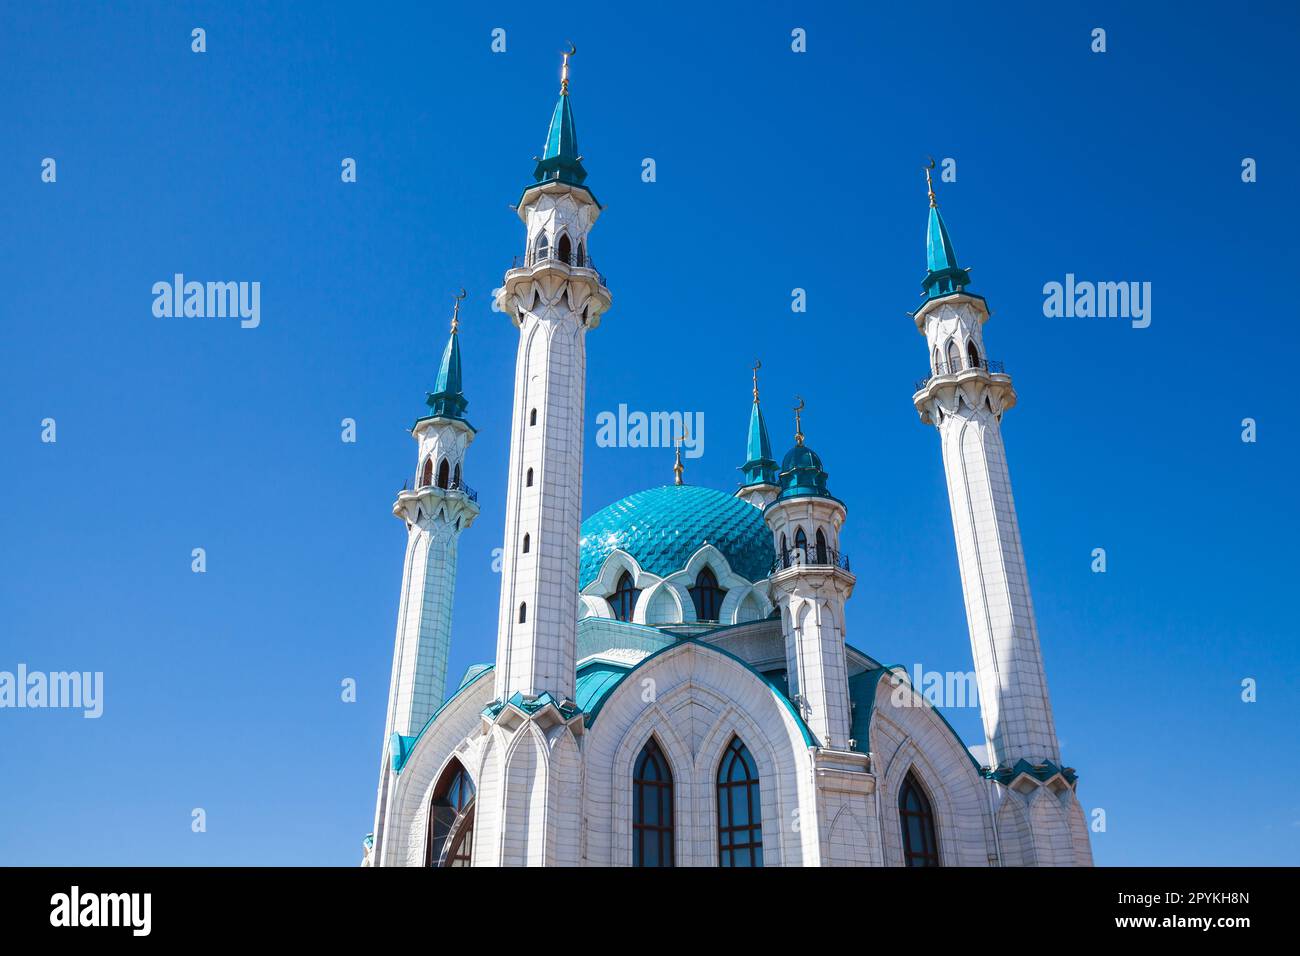 La mosquée de Kul Sharif est sous un ciel bleu clair par une journée ensoleillée. Kremlin Kazan, République du Tatarstan, Russie Banque D'Images